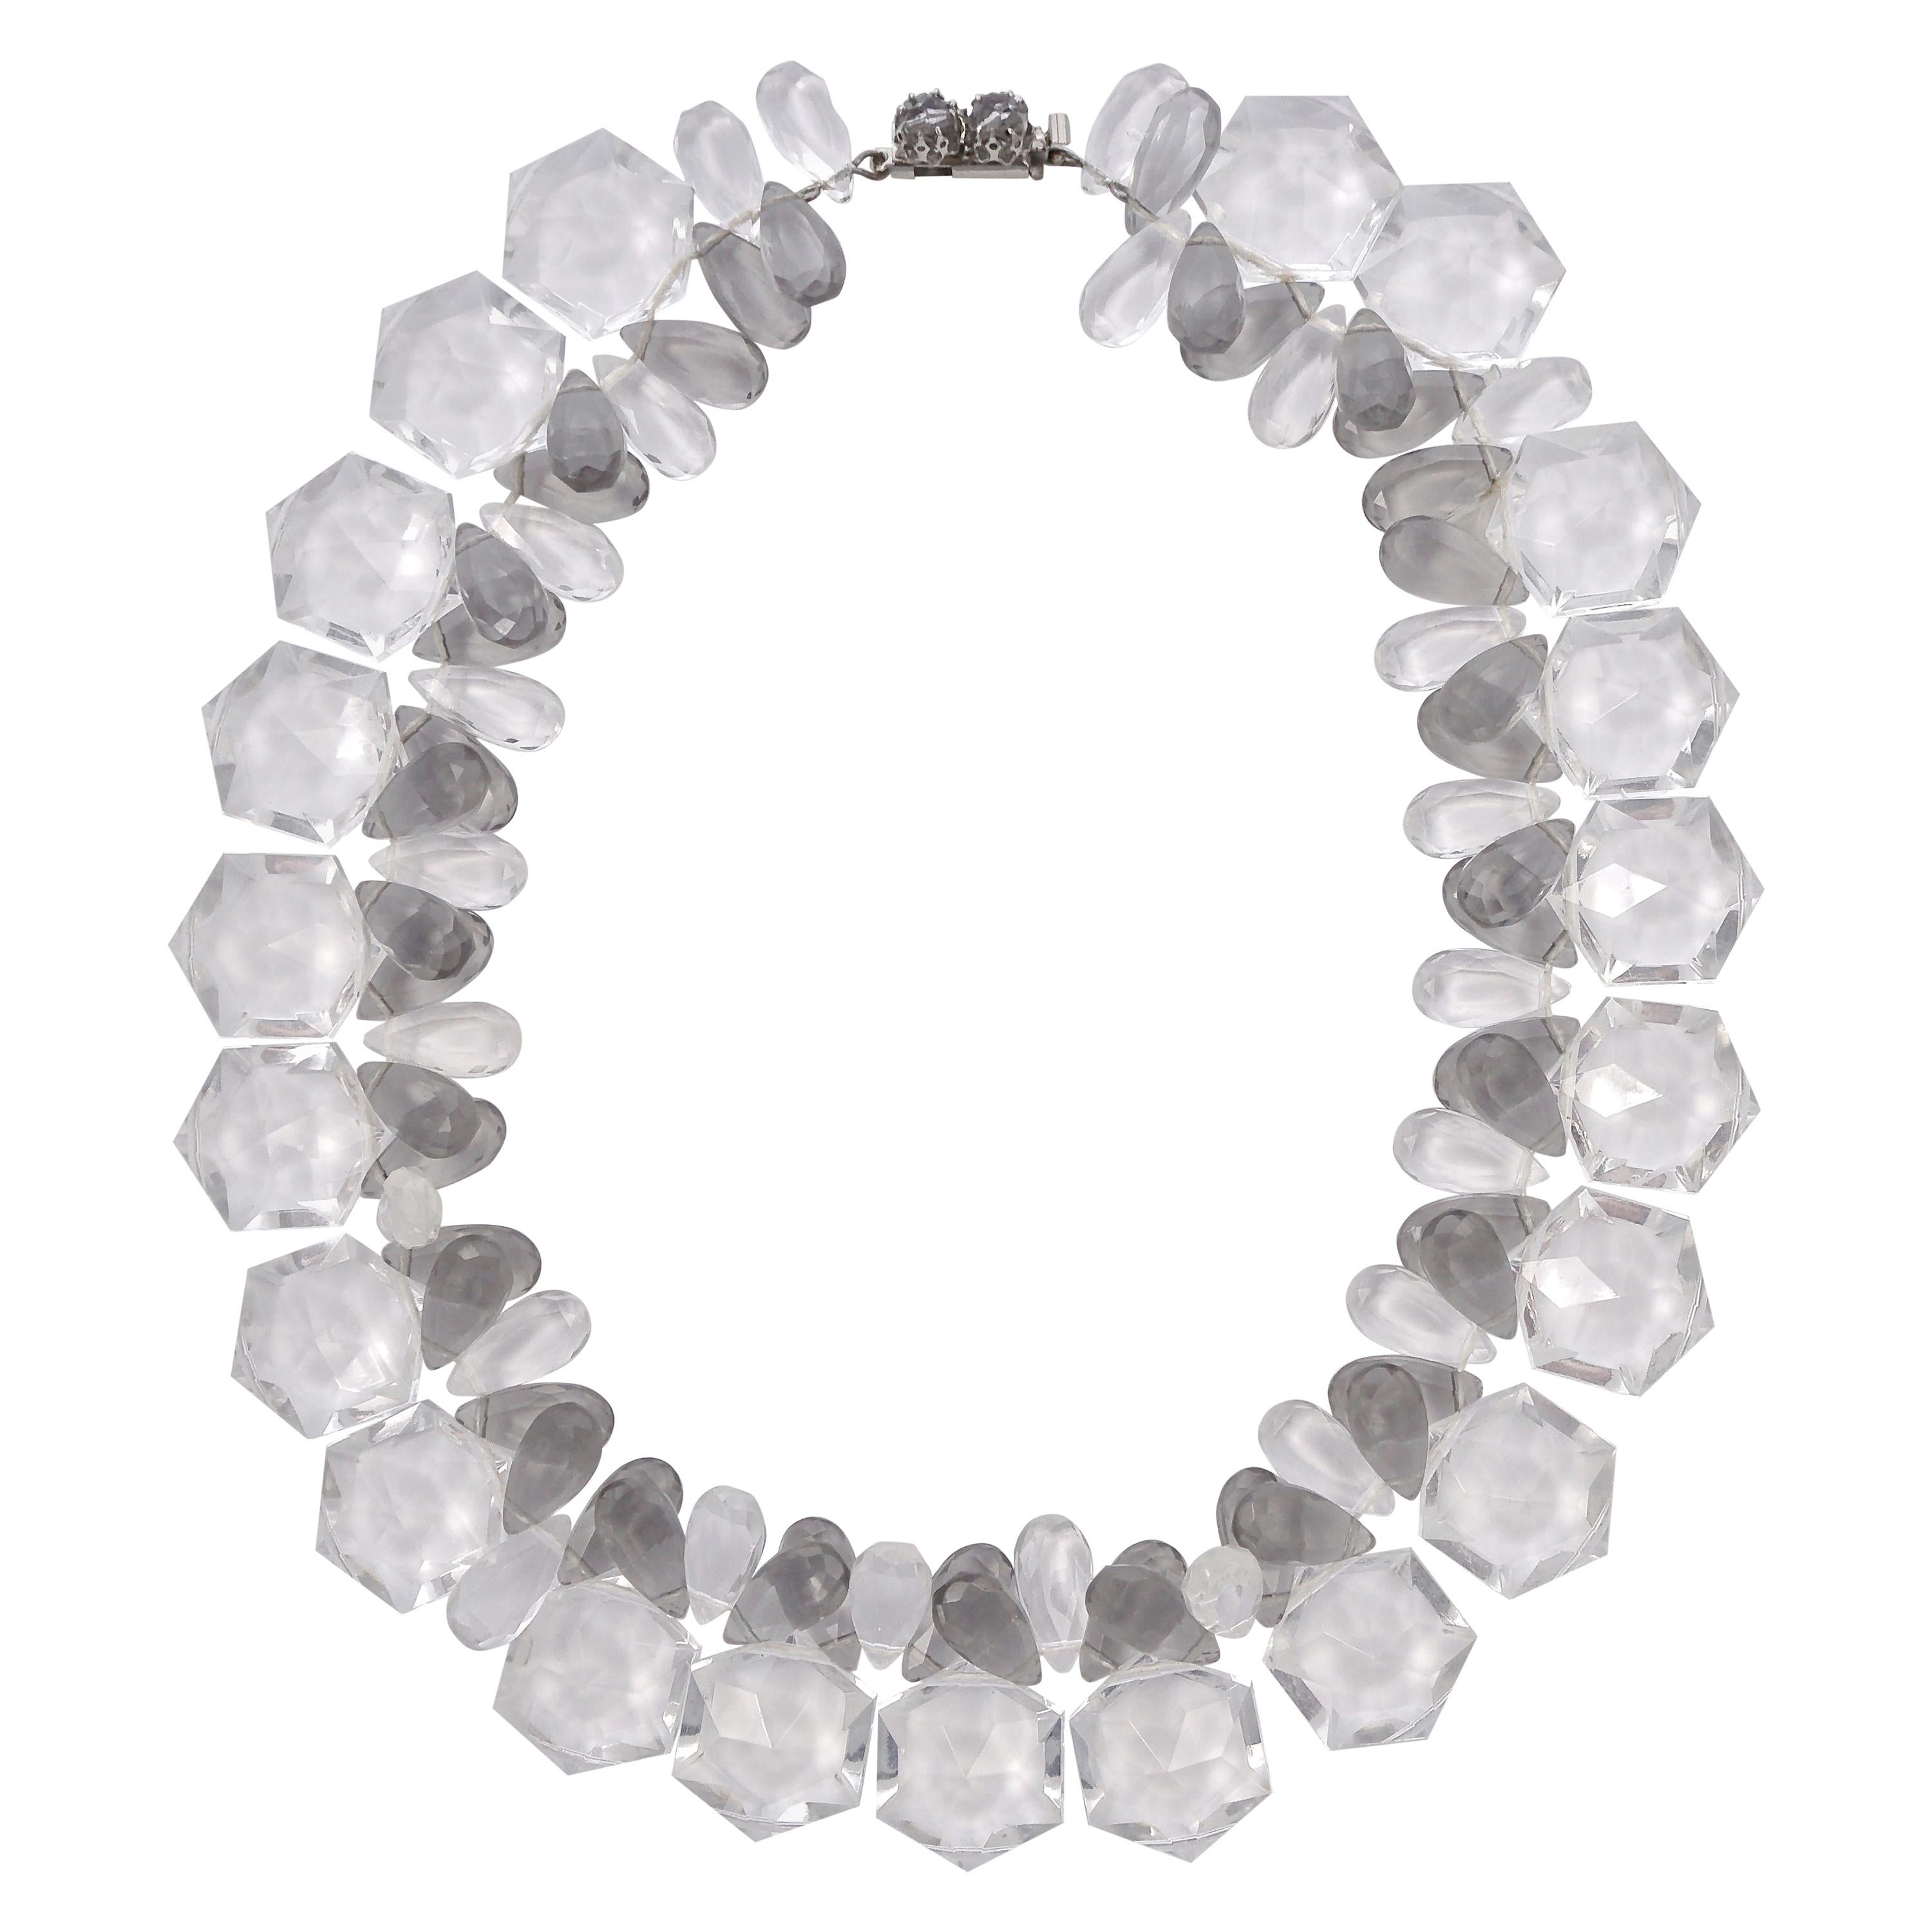 Collier de perles en plastique transparent et gris avec un fermoir gris et argenté